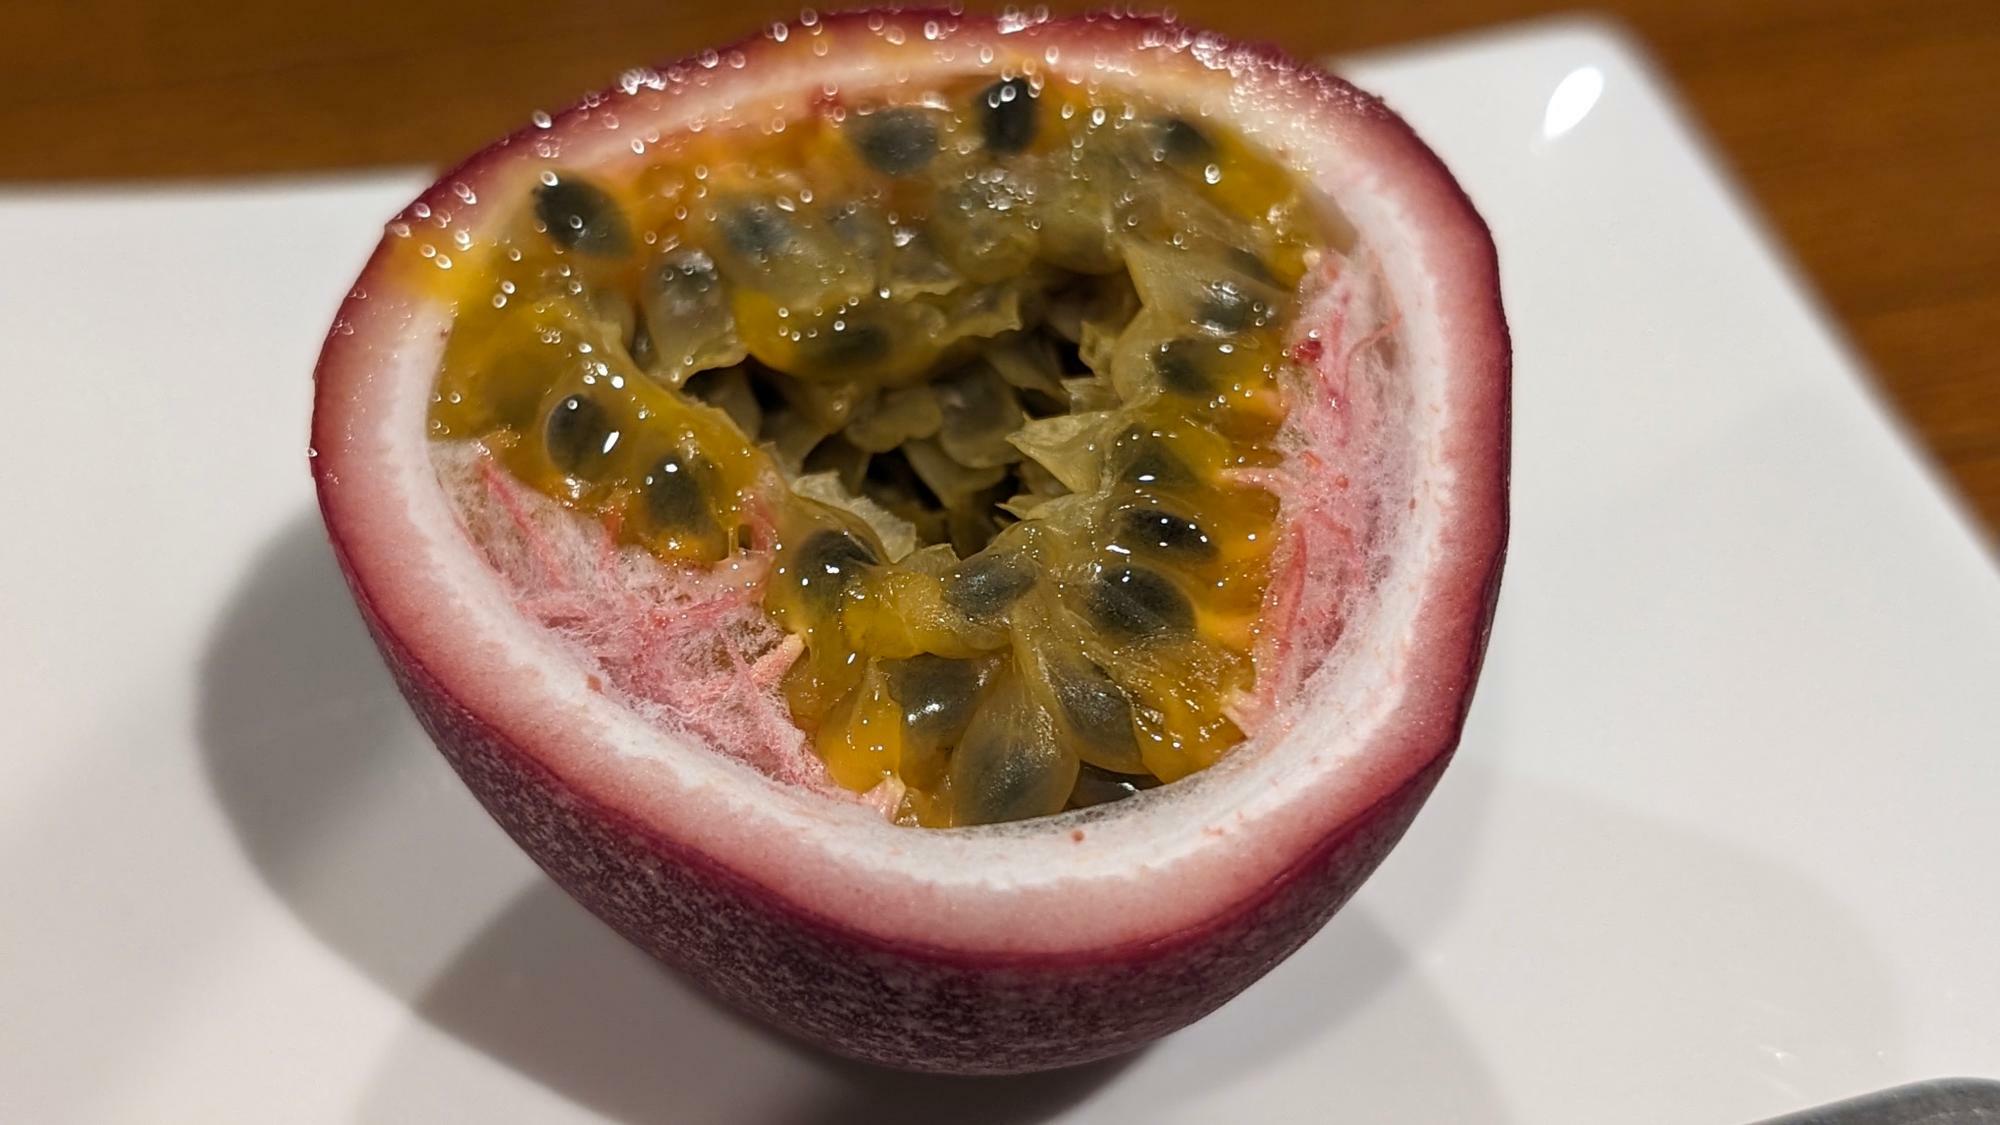 糸満のNatural Passion 沖縄では、7年かけてパッションフルーツの無農薬栽培を実現。肉厚でしっかりした歯ごたえとしっかりした甘みが特徴だ。